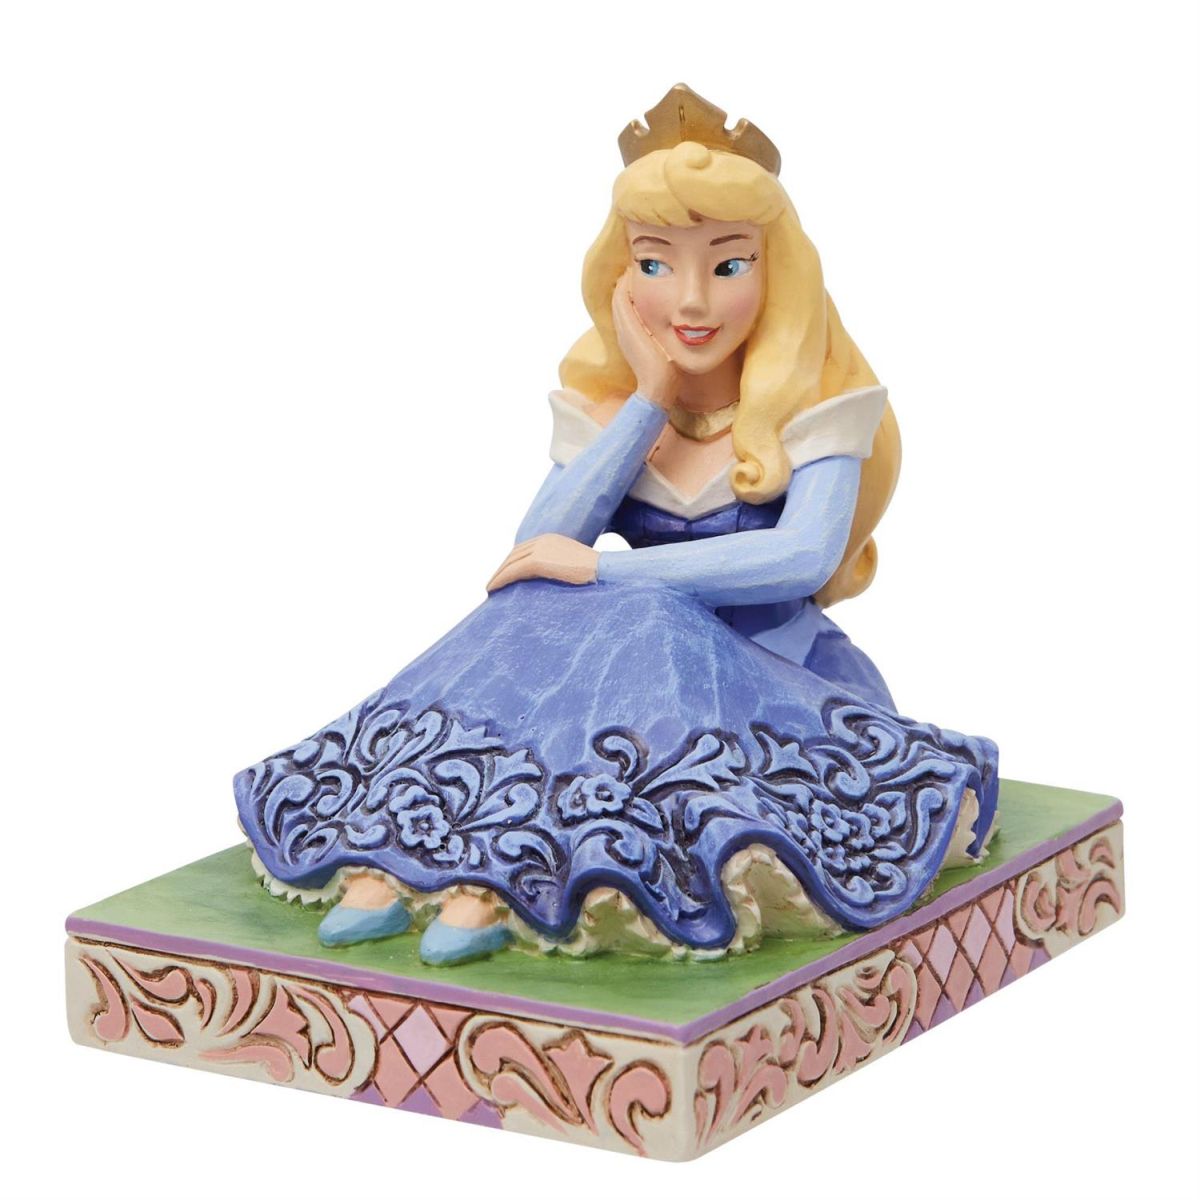 オーロラ姫 お座りポーズ 8.5cm 眠れる森の美女 | ディズニー グッズ フィギュア 大人向け 人形 置物 彫刻 ジムショ…